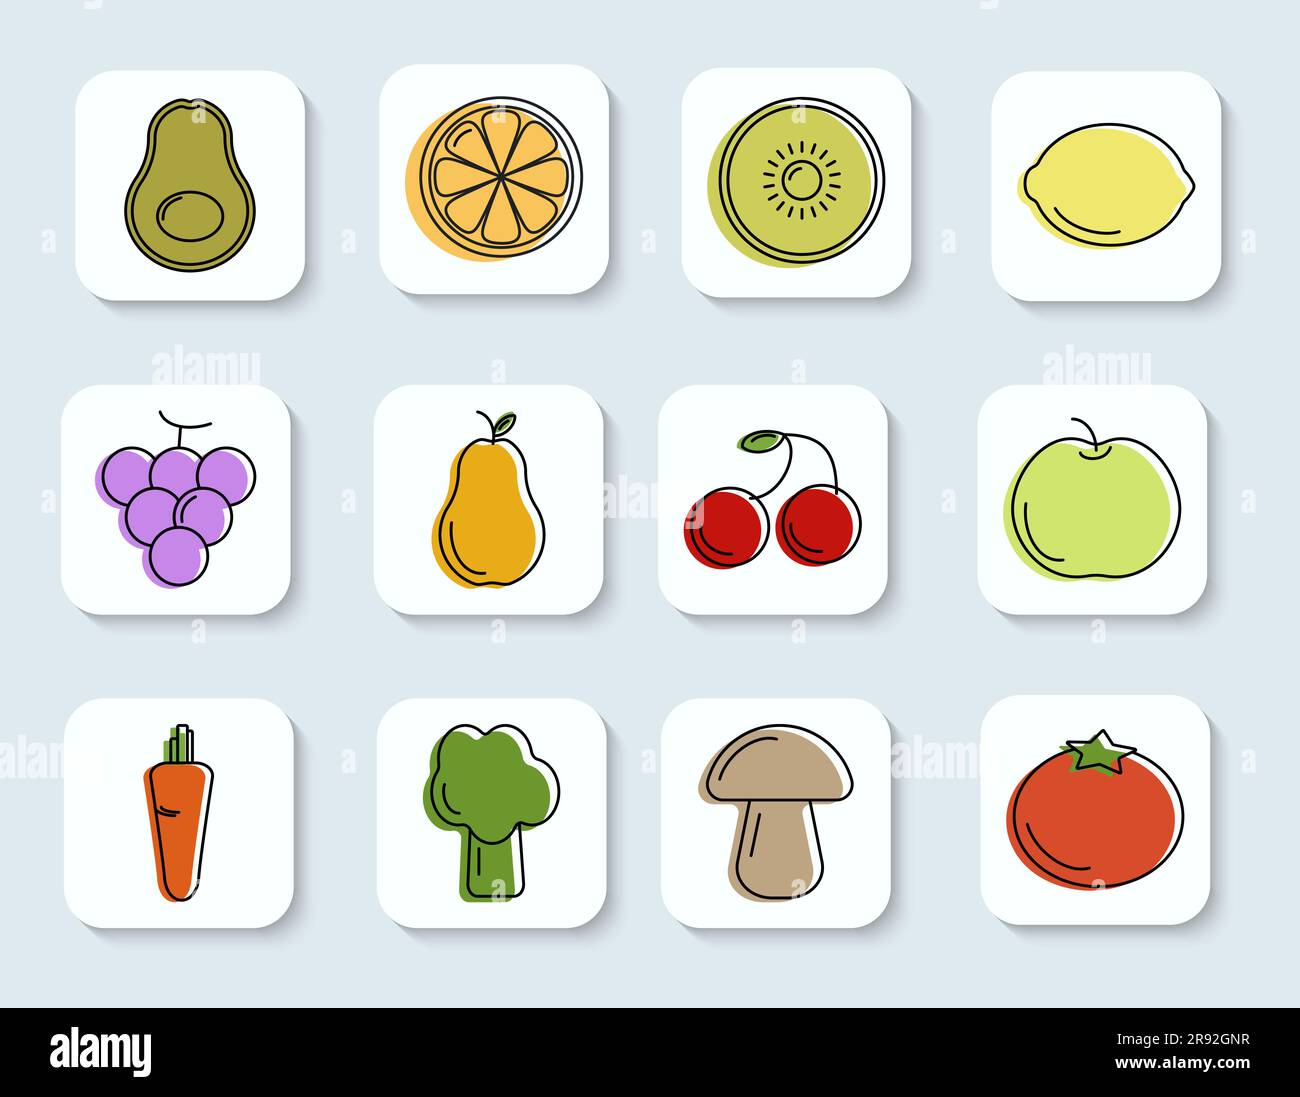 Icons-Sammlung Übersicht Illustrationen zu vegetarischen und gesunden Lebensmitteln Design Element für Web oder App isolierter Vektor Stock Vektor